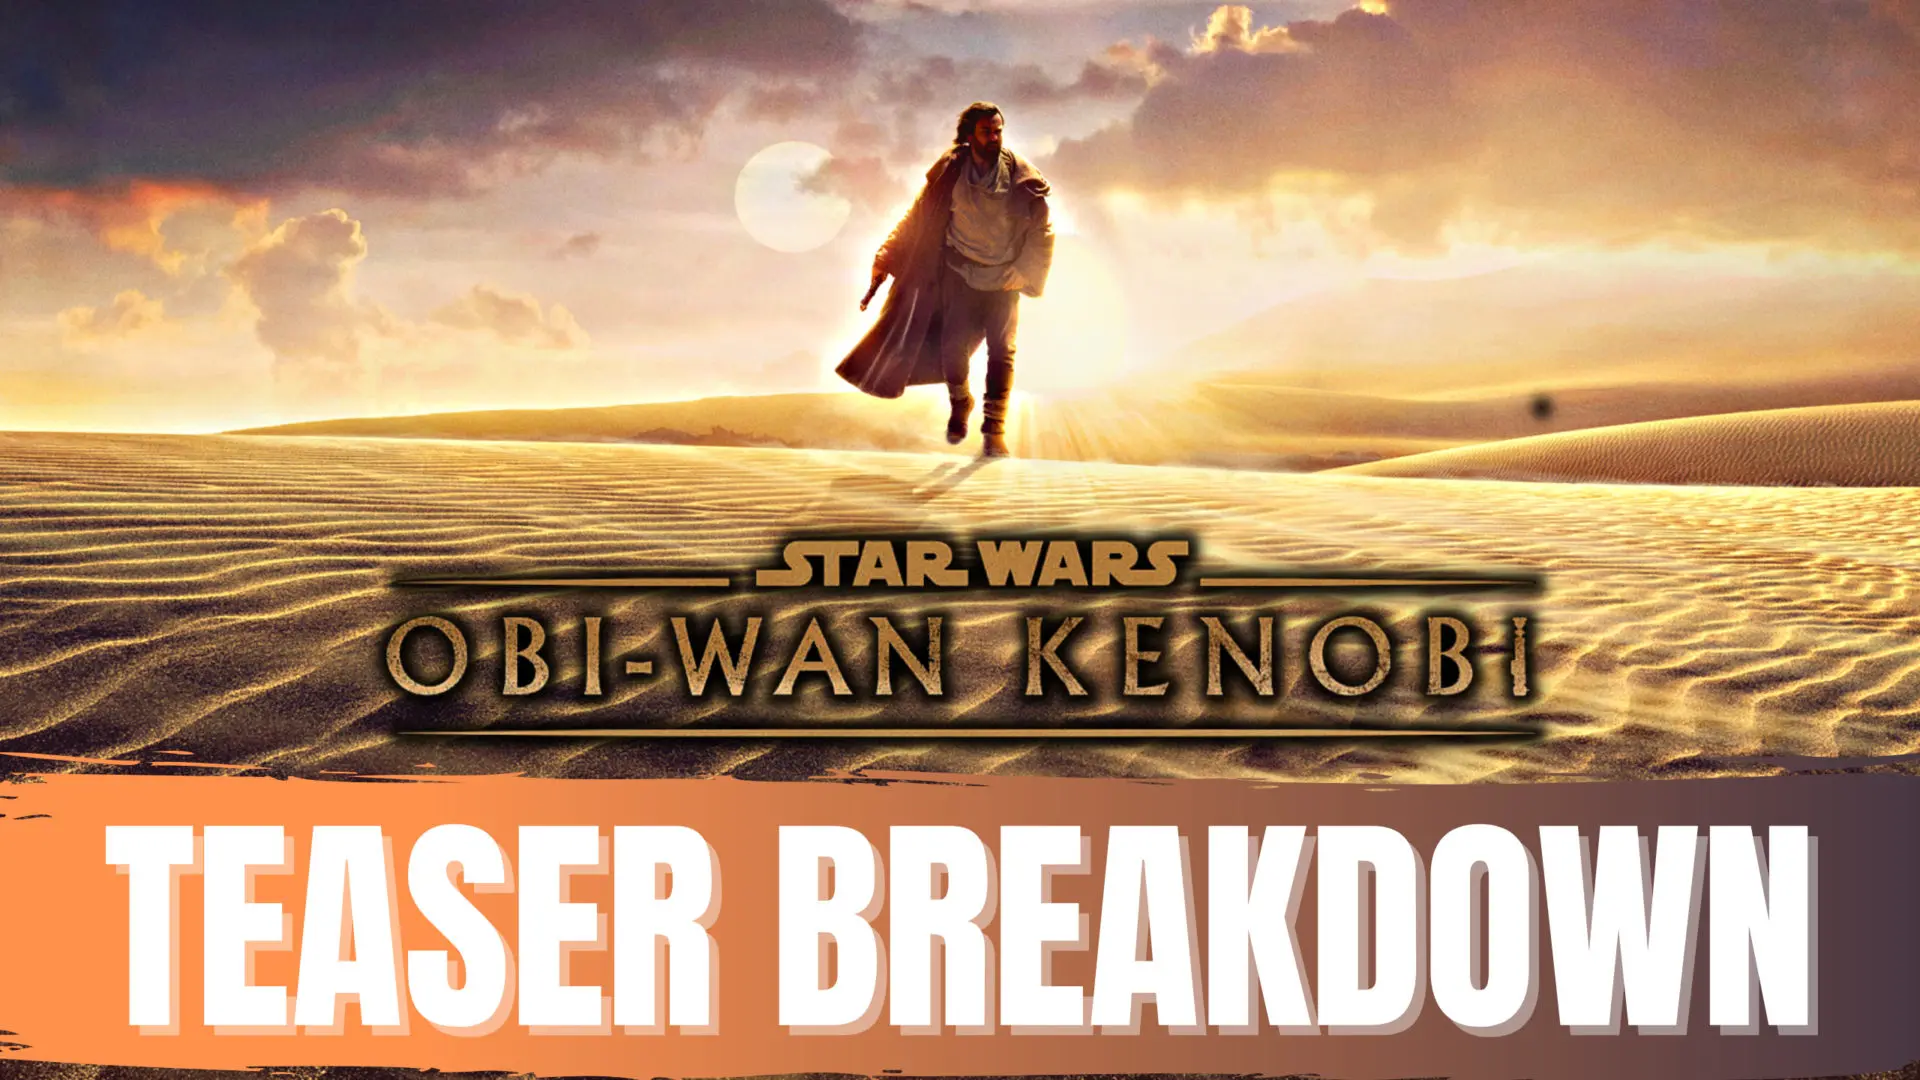 Obi-Wan Kenobi Teaser Breakdown